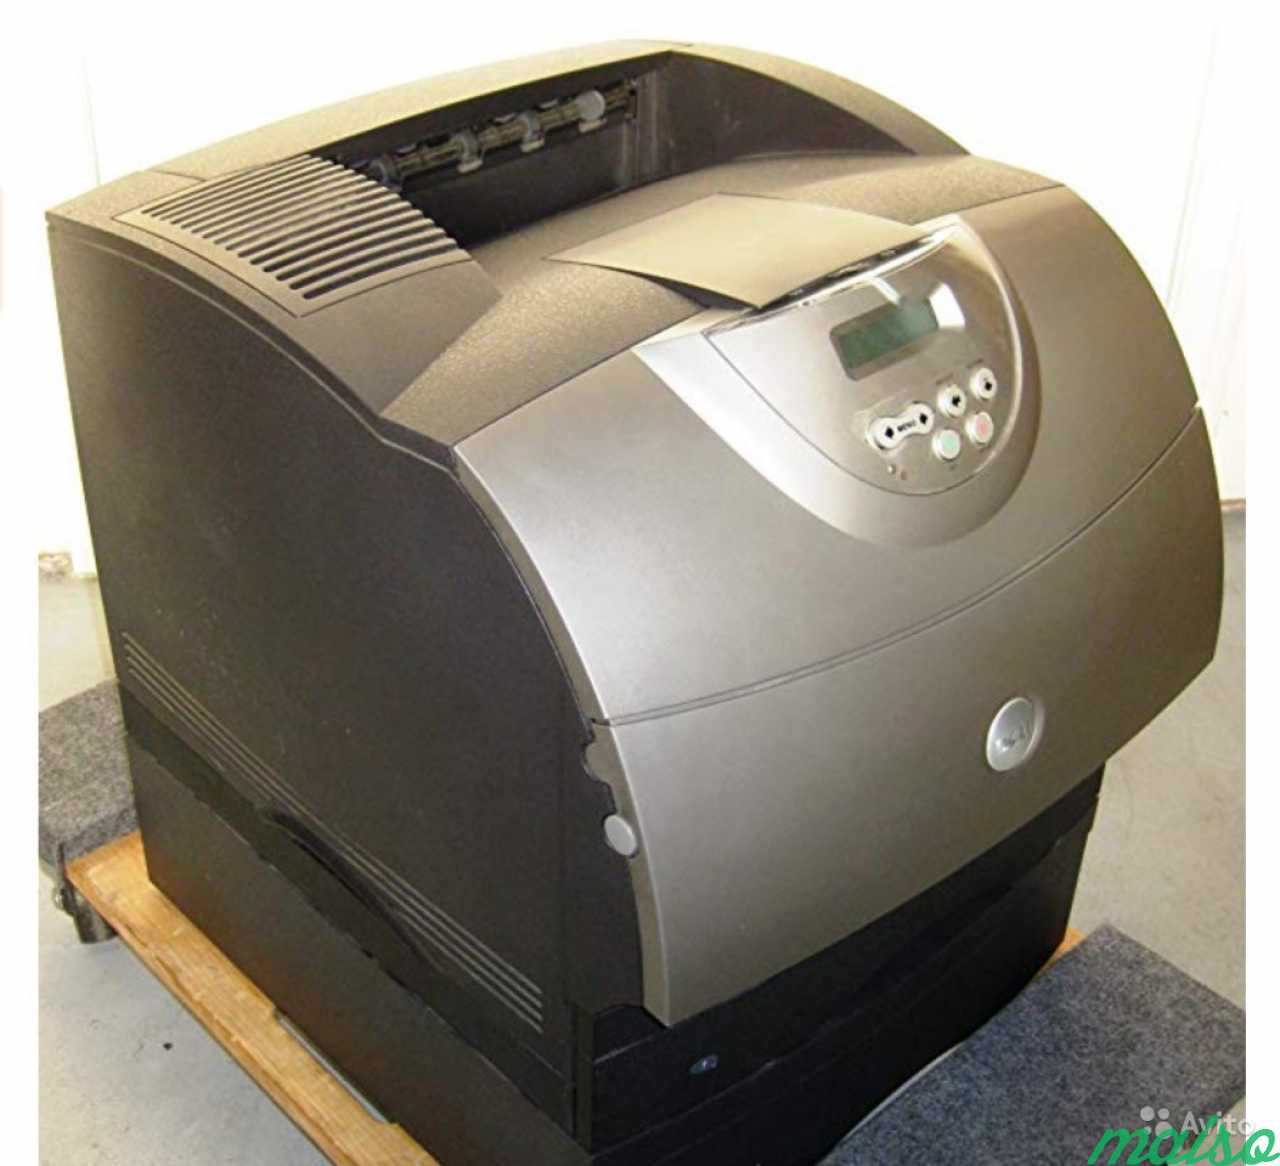 Лазерный принтер Dell M5200 в Санкт-Петербурге. Фото 2